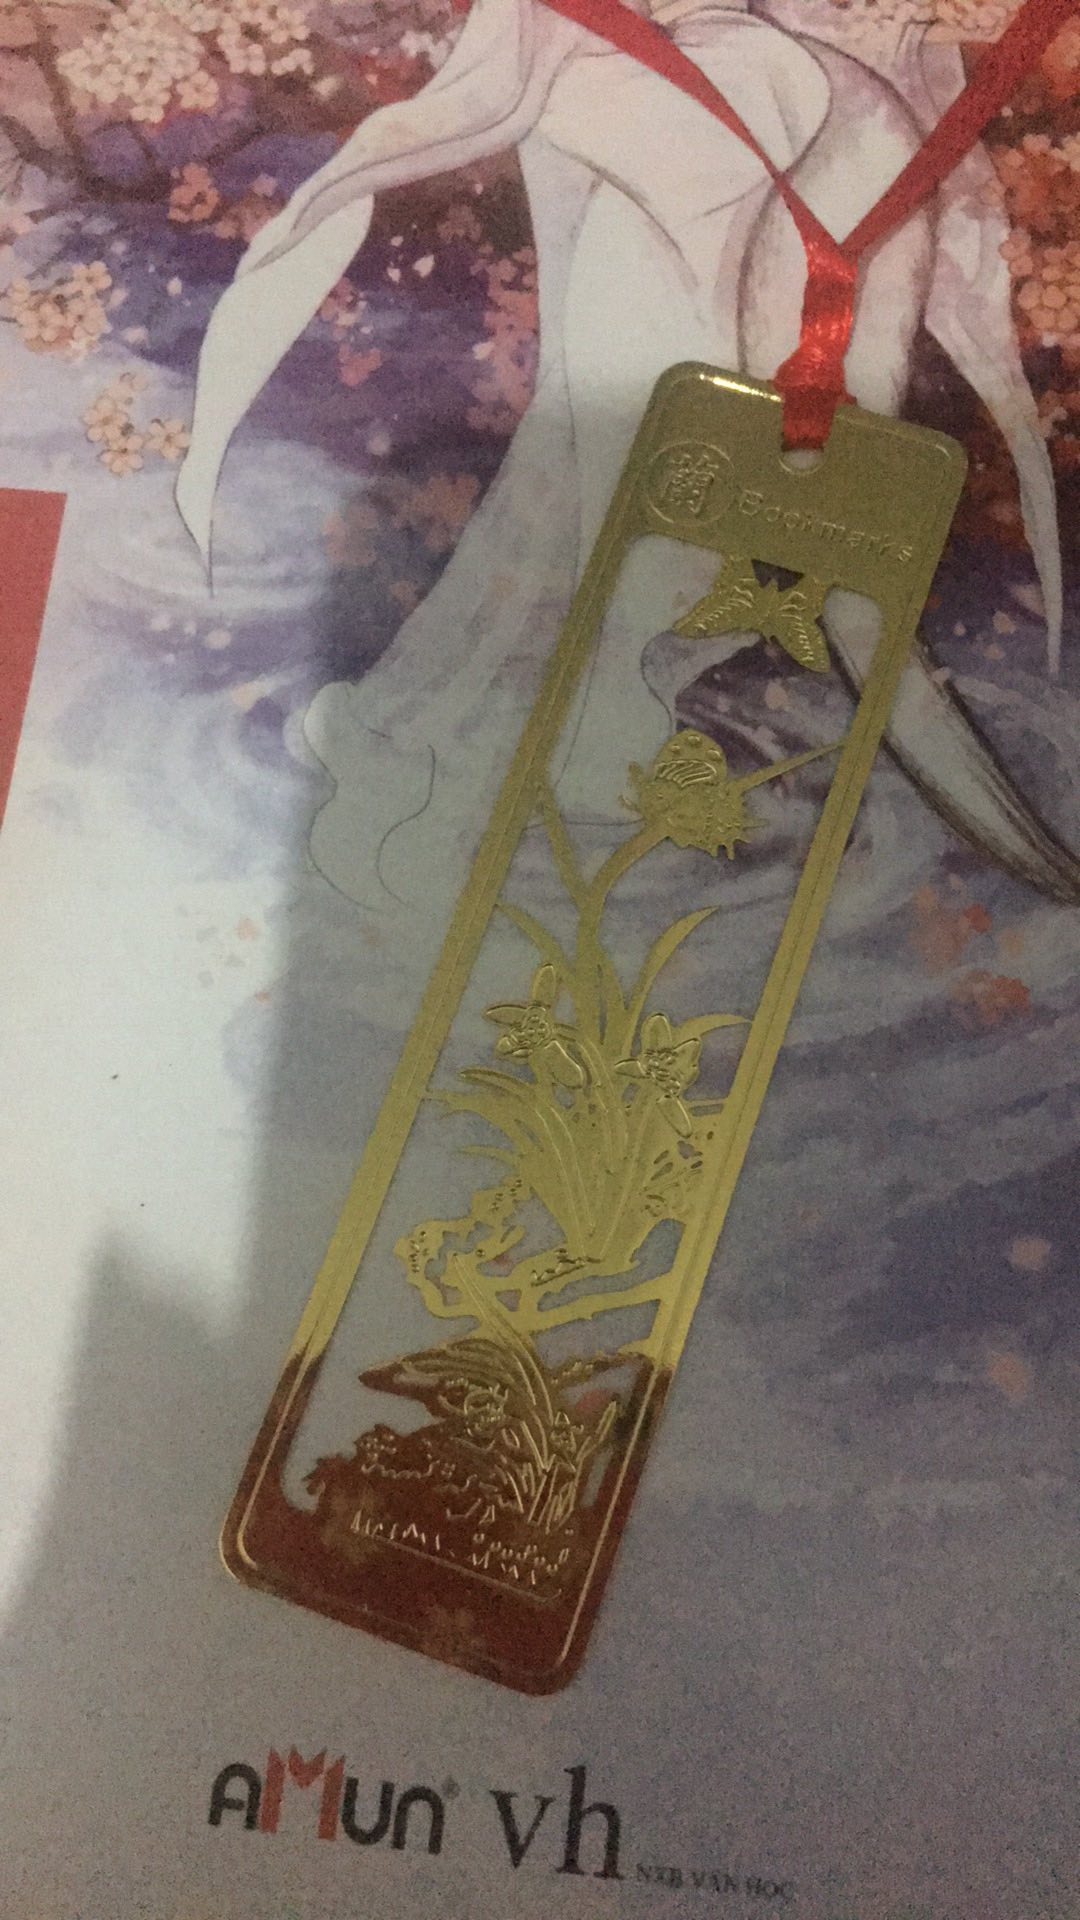 Bookmark Đánh Dấu Sách Phong Cách Trung Hoa - 8cmx2.3cm - Giao Mẫu Ngẫu Nhiên